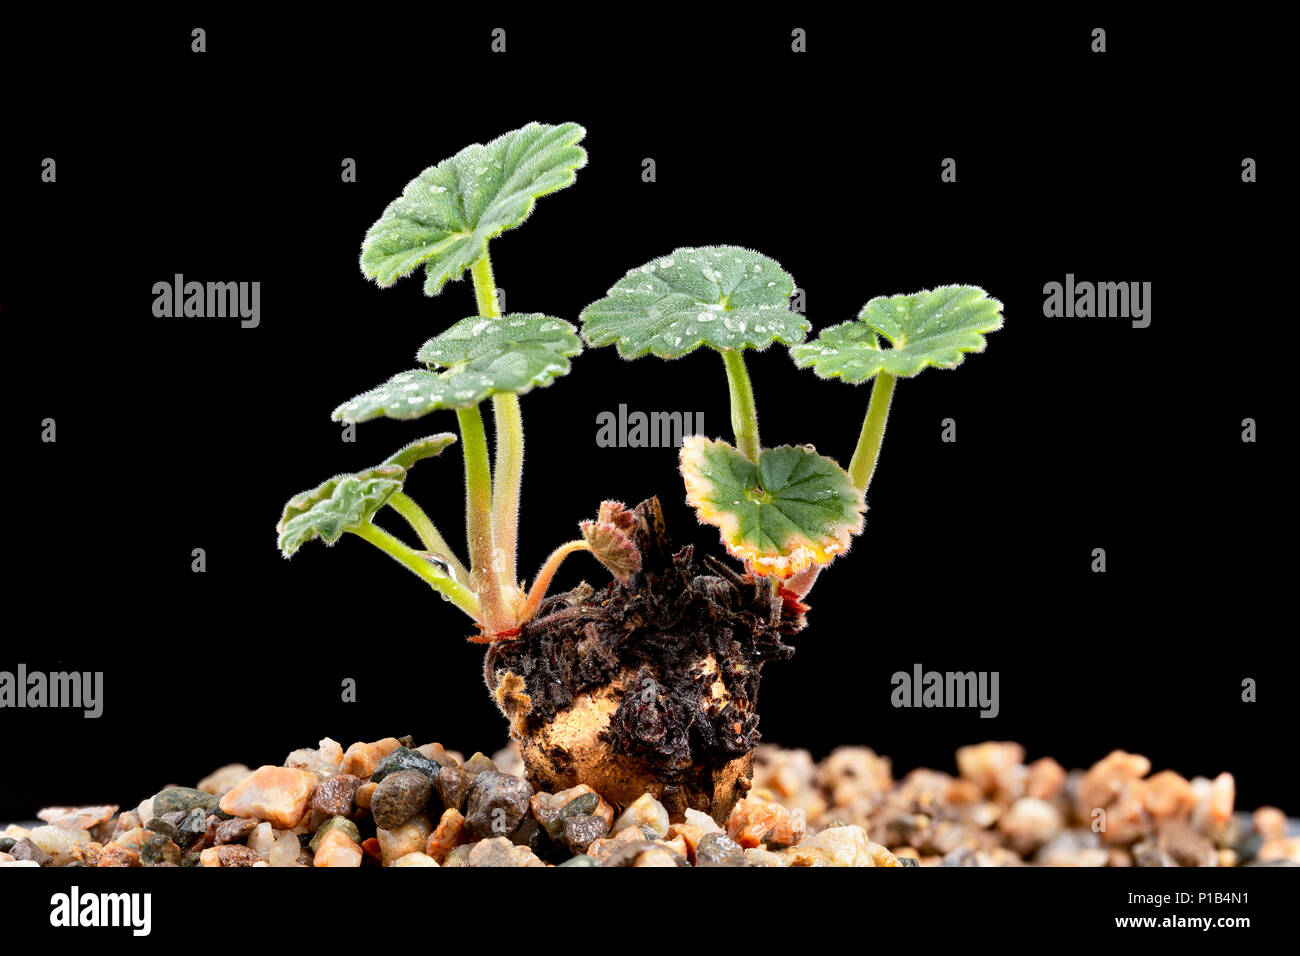 Turkish Pelargonium, Pelargonium endlicherianum, in cultivation. Stock Photo